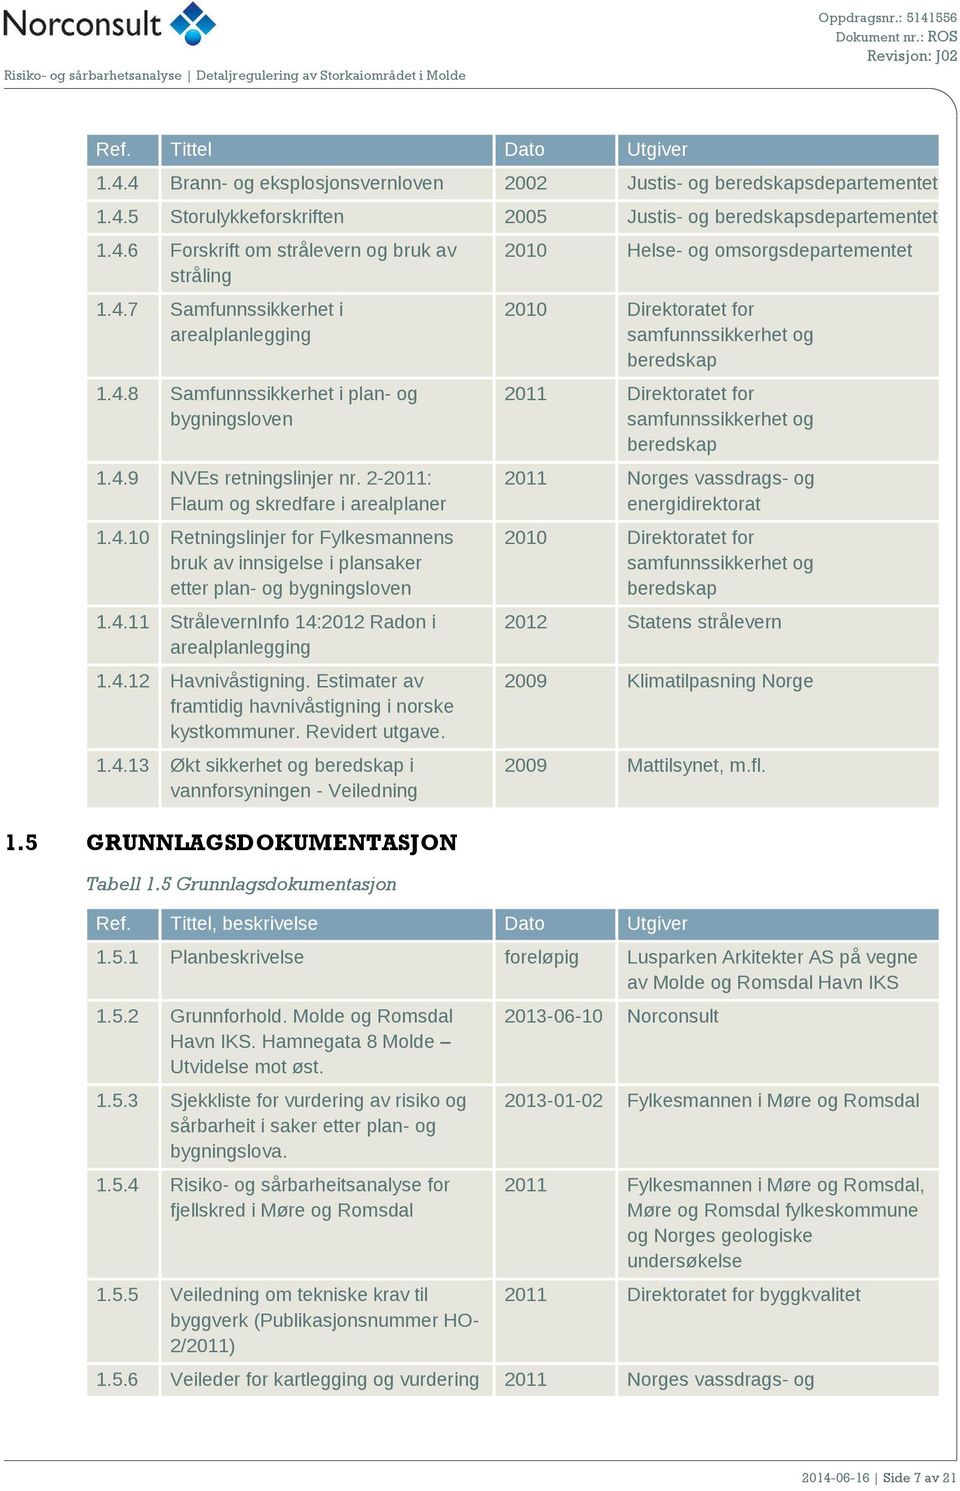 4.11 StrålevernInfo 14:2012 Radon i arealplanlegging 1.4.12 Havnivåstigning. Estimater av framtidig havnivåstigning i norske kystkommuner. Revidert utgave. 1.4.13 Økt sikkerhet og beredskap i vannforsyningen - Veiledning 1.